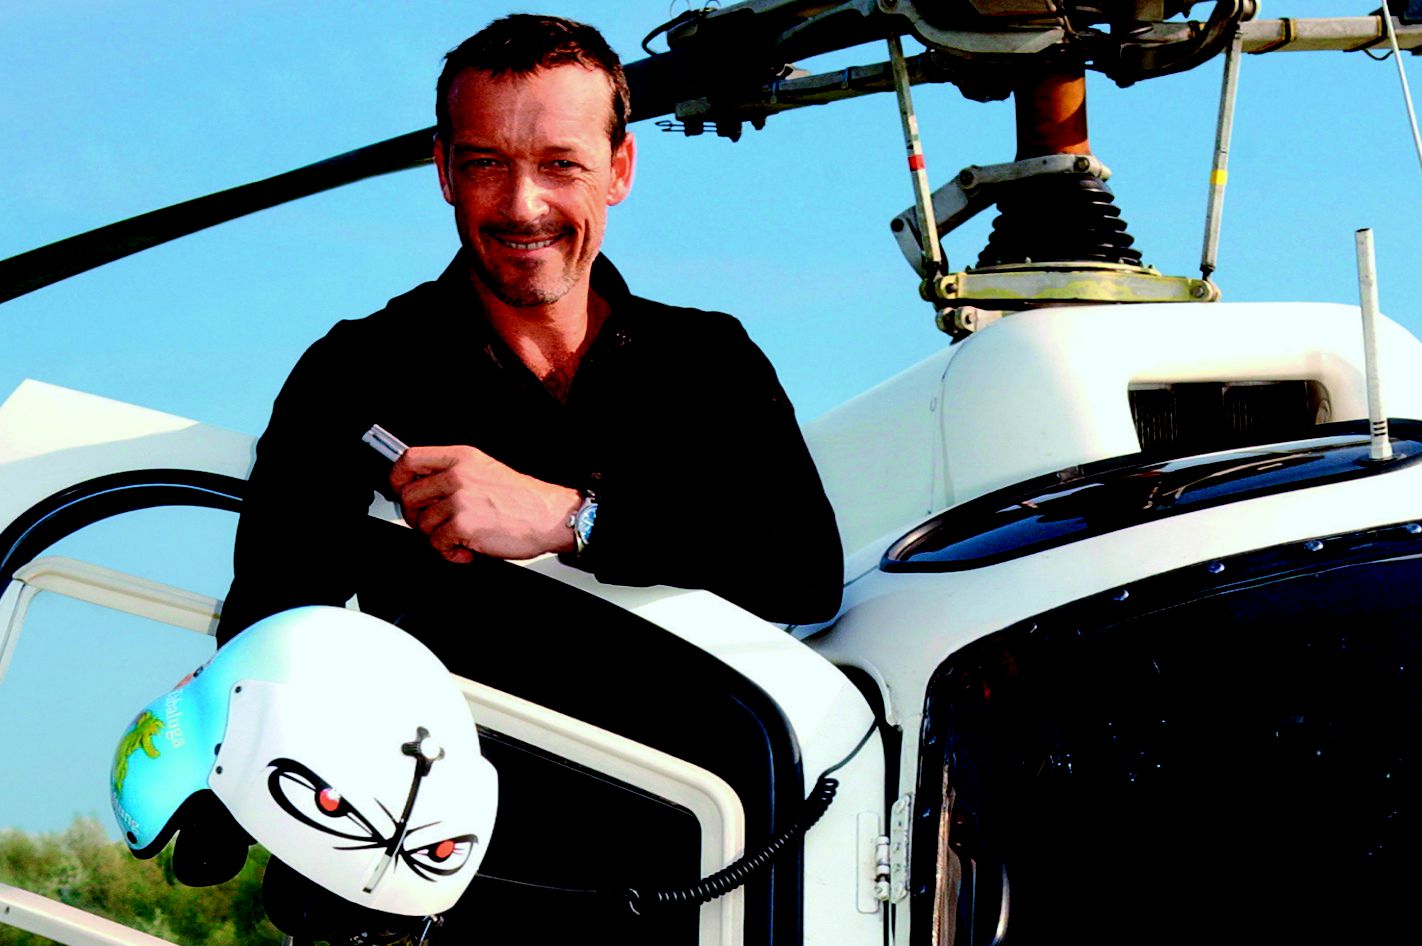 Heli-Flug mit Schauspieler Michael Roll für bis zu 4 Personen